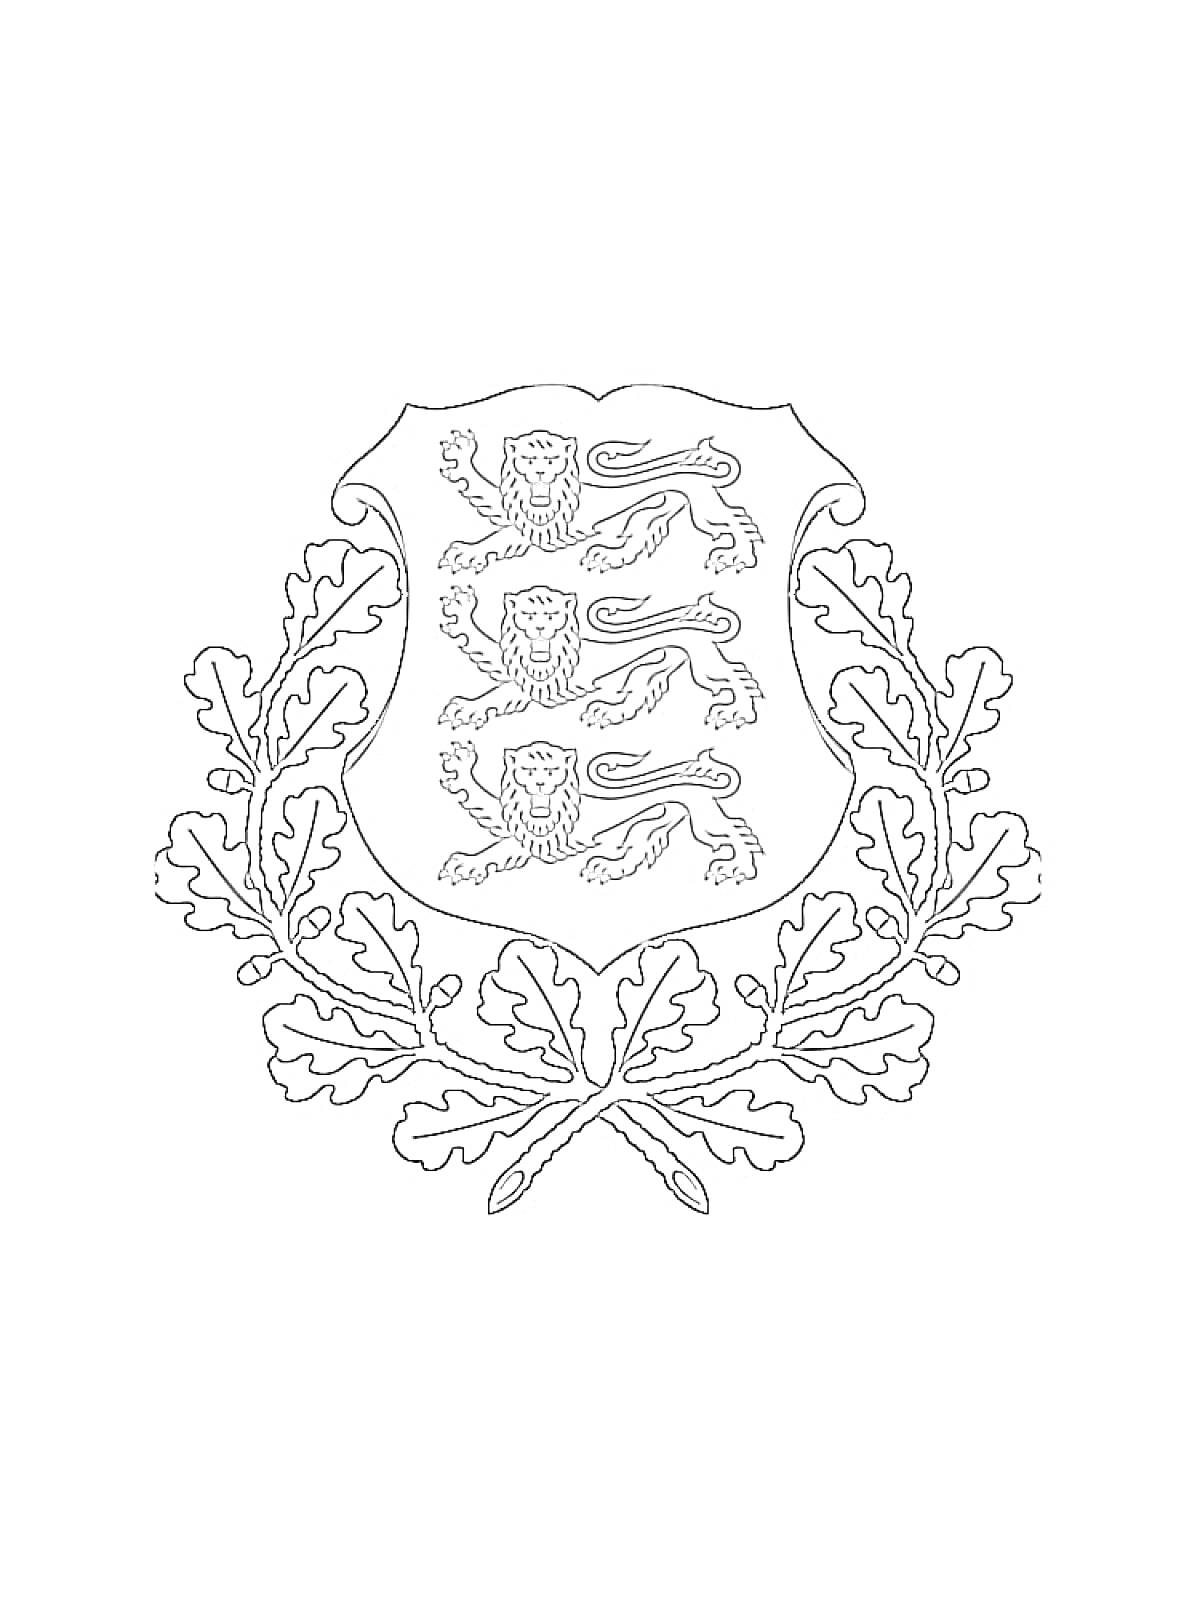 Герб с тремя львами и дубовыми листьями